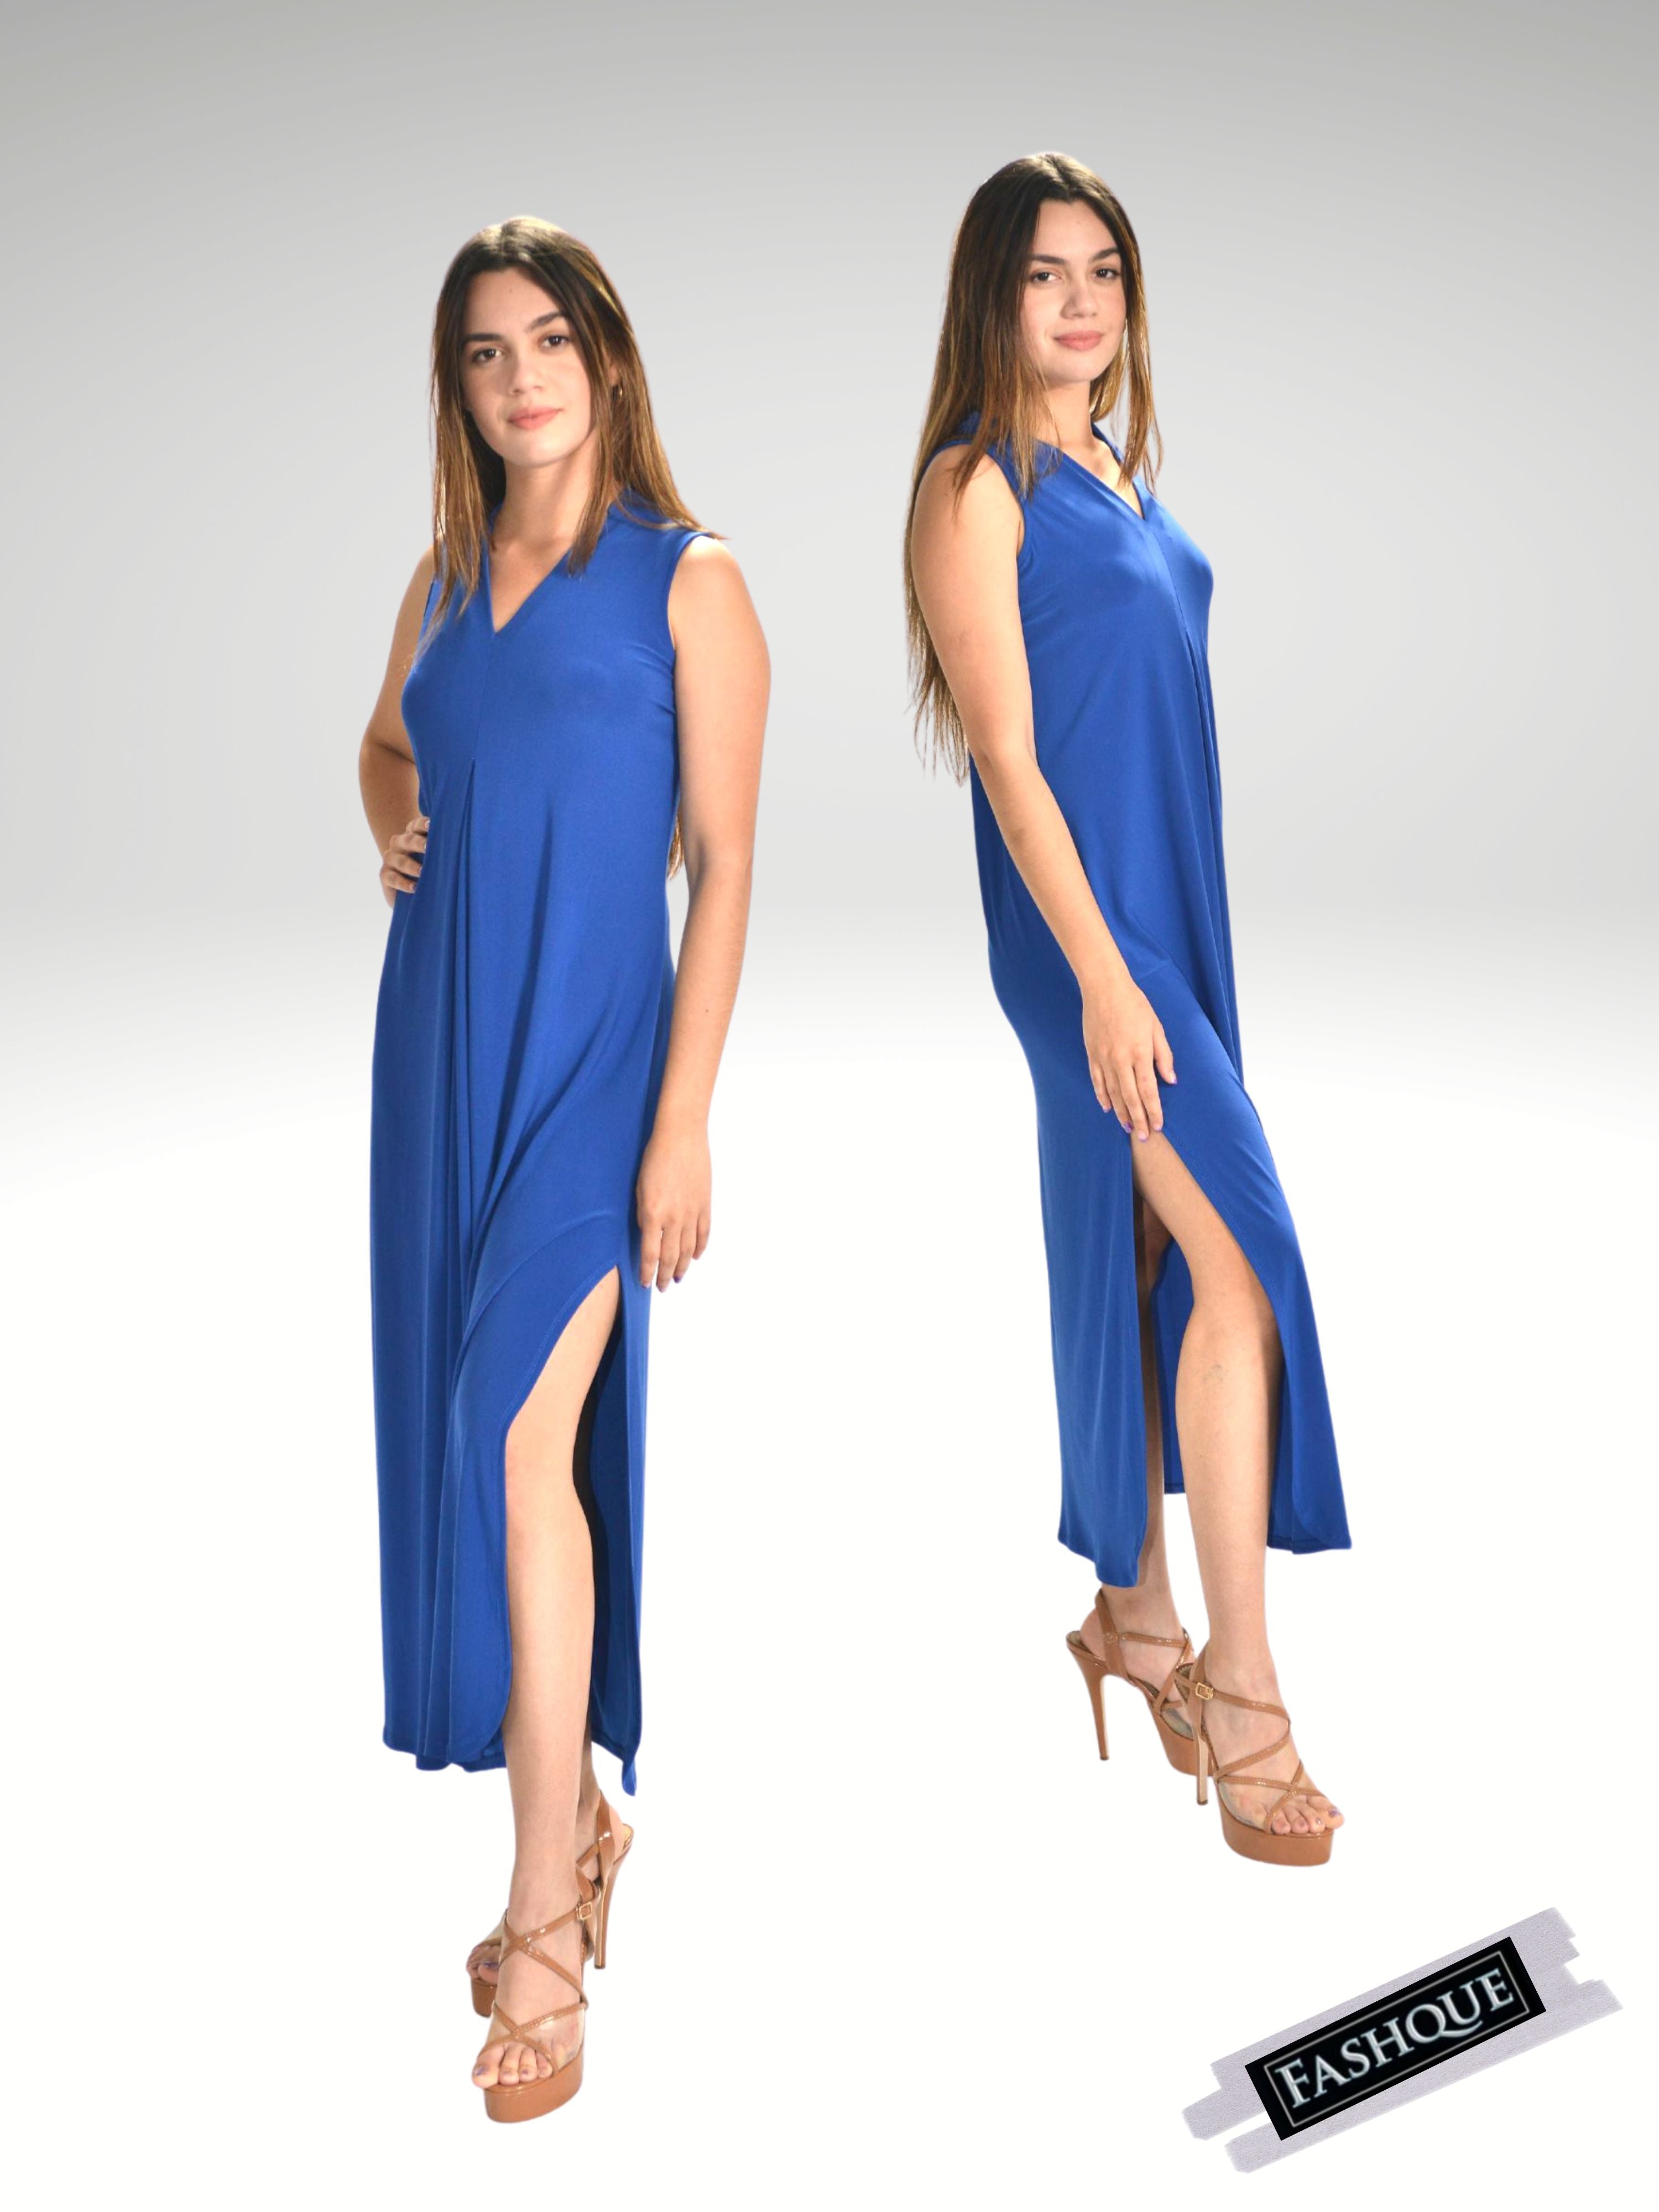 FASHQUE - Sheath Silhouette V-Neckline Side Slit Maxi Dress - D052